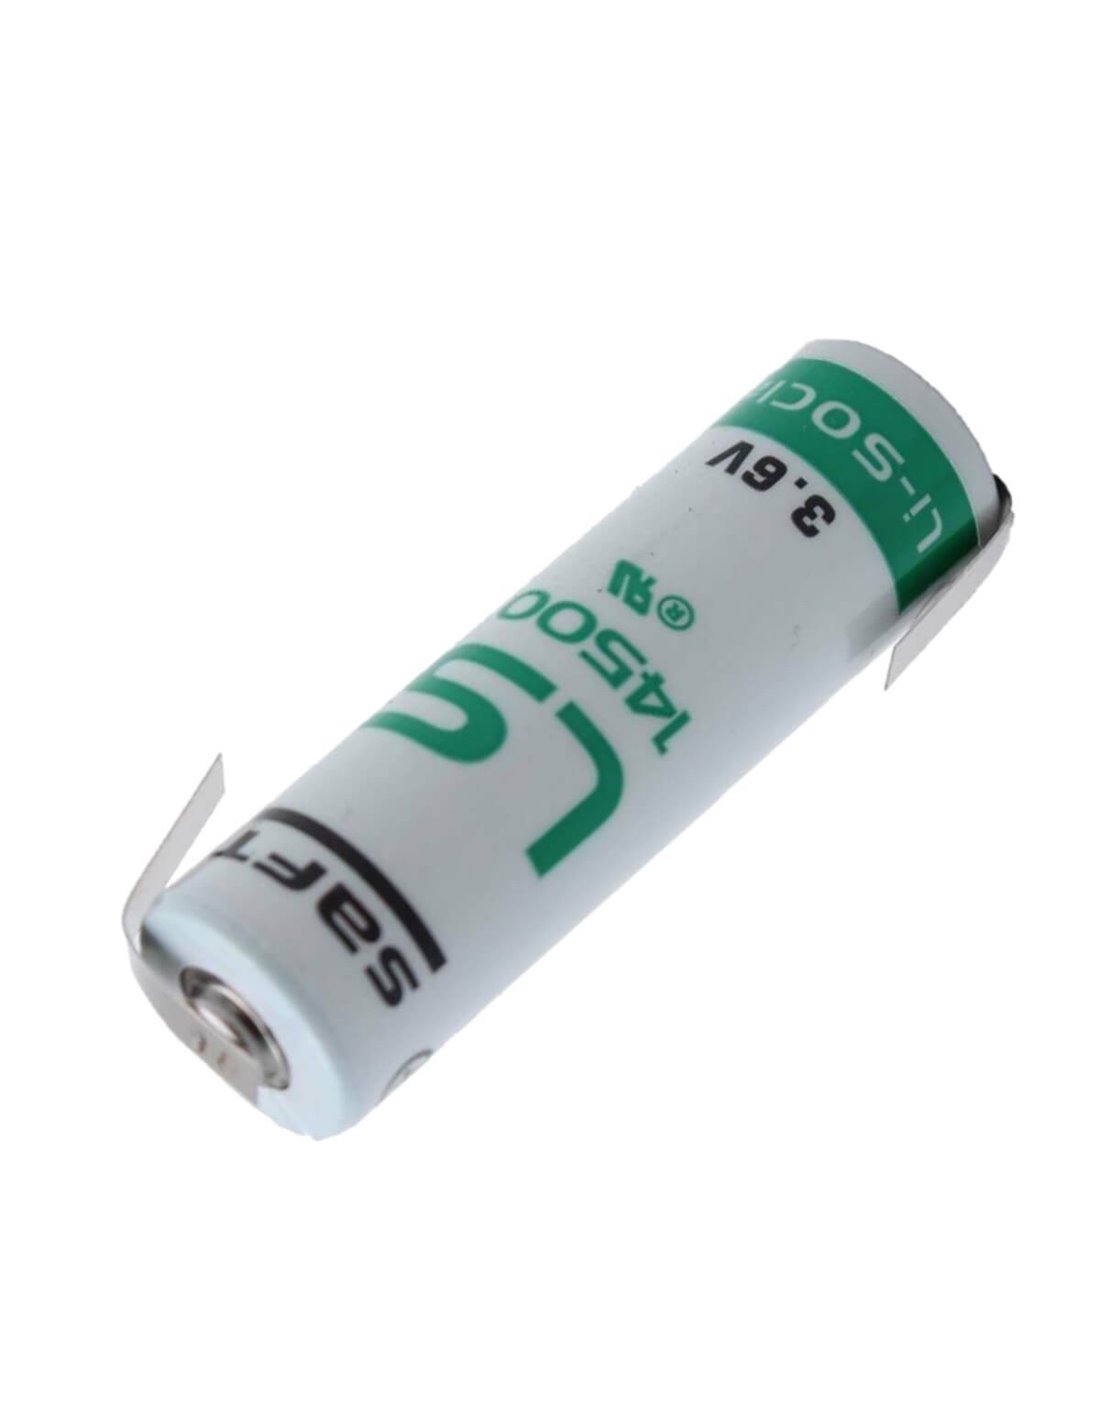 Saft LS14500, 3.6 Volt 2600mAh AA Lithium (Li-SOCl2) Battery